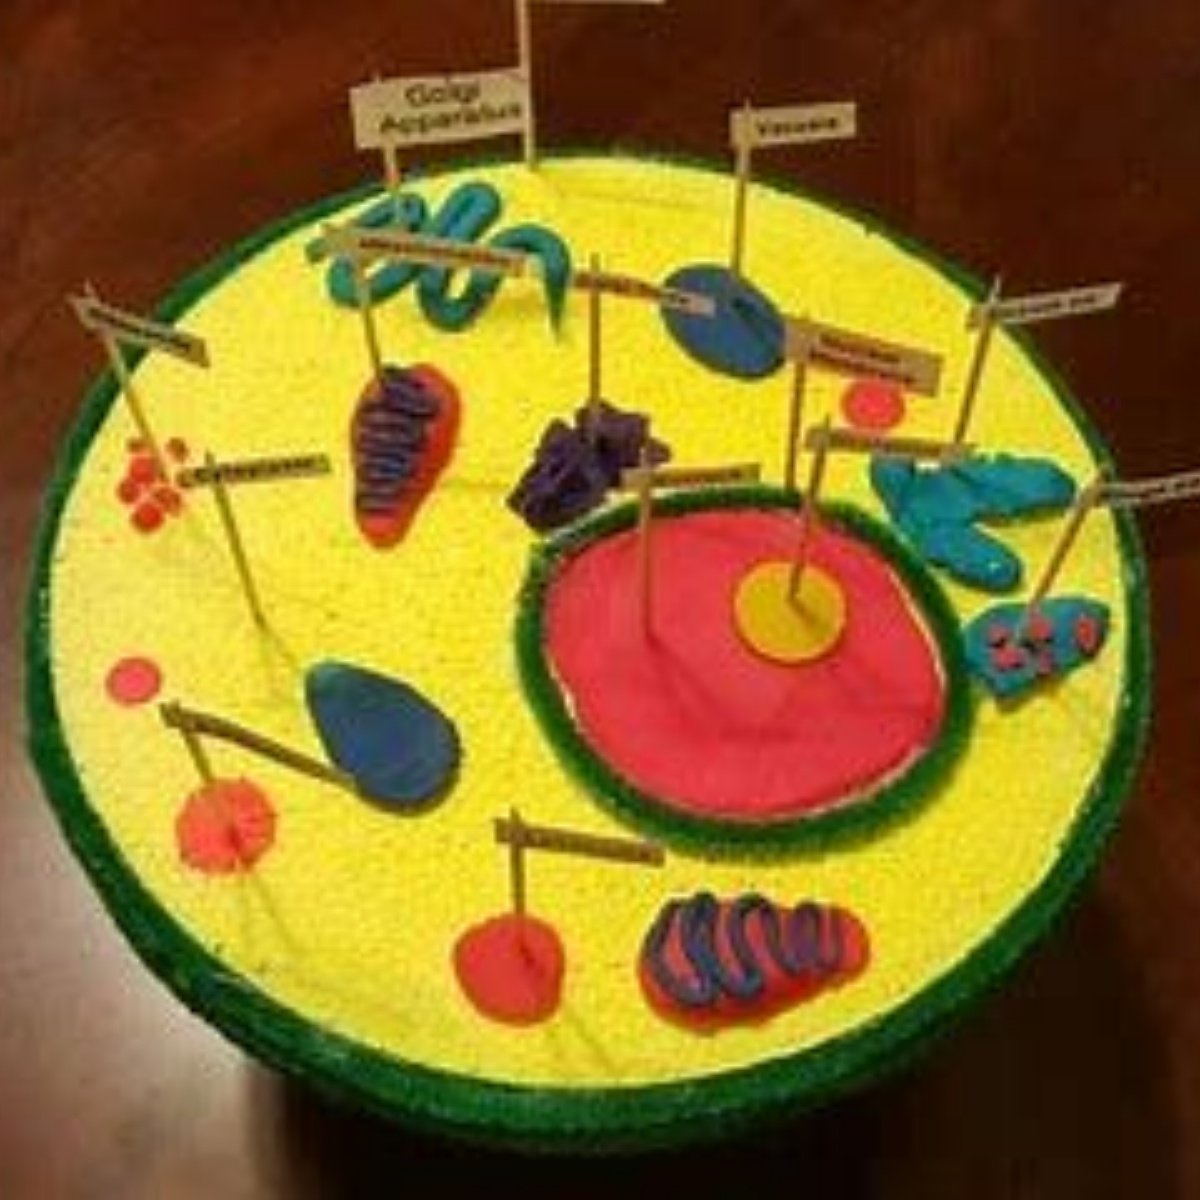 Биология из пластилина. Макет клетки. Поделки для биологии. Модель растительной клетки из пластилина.